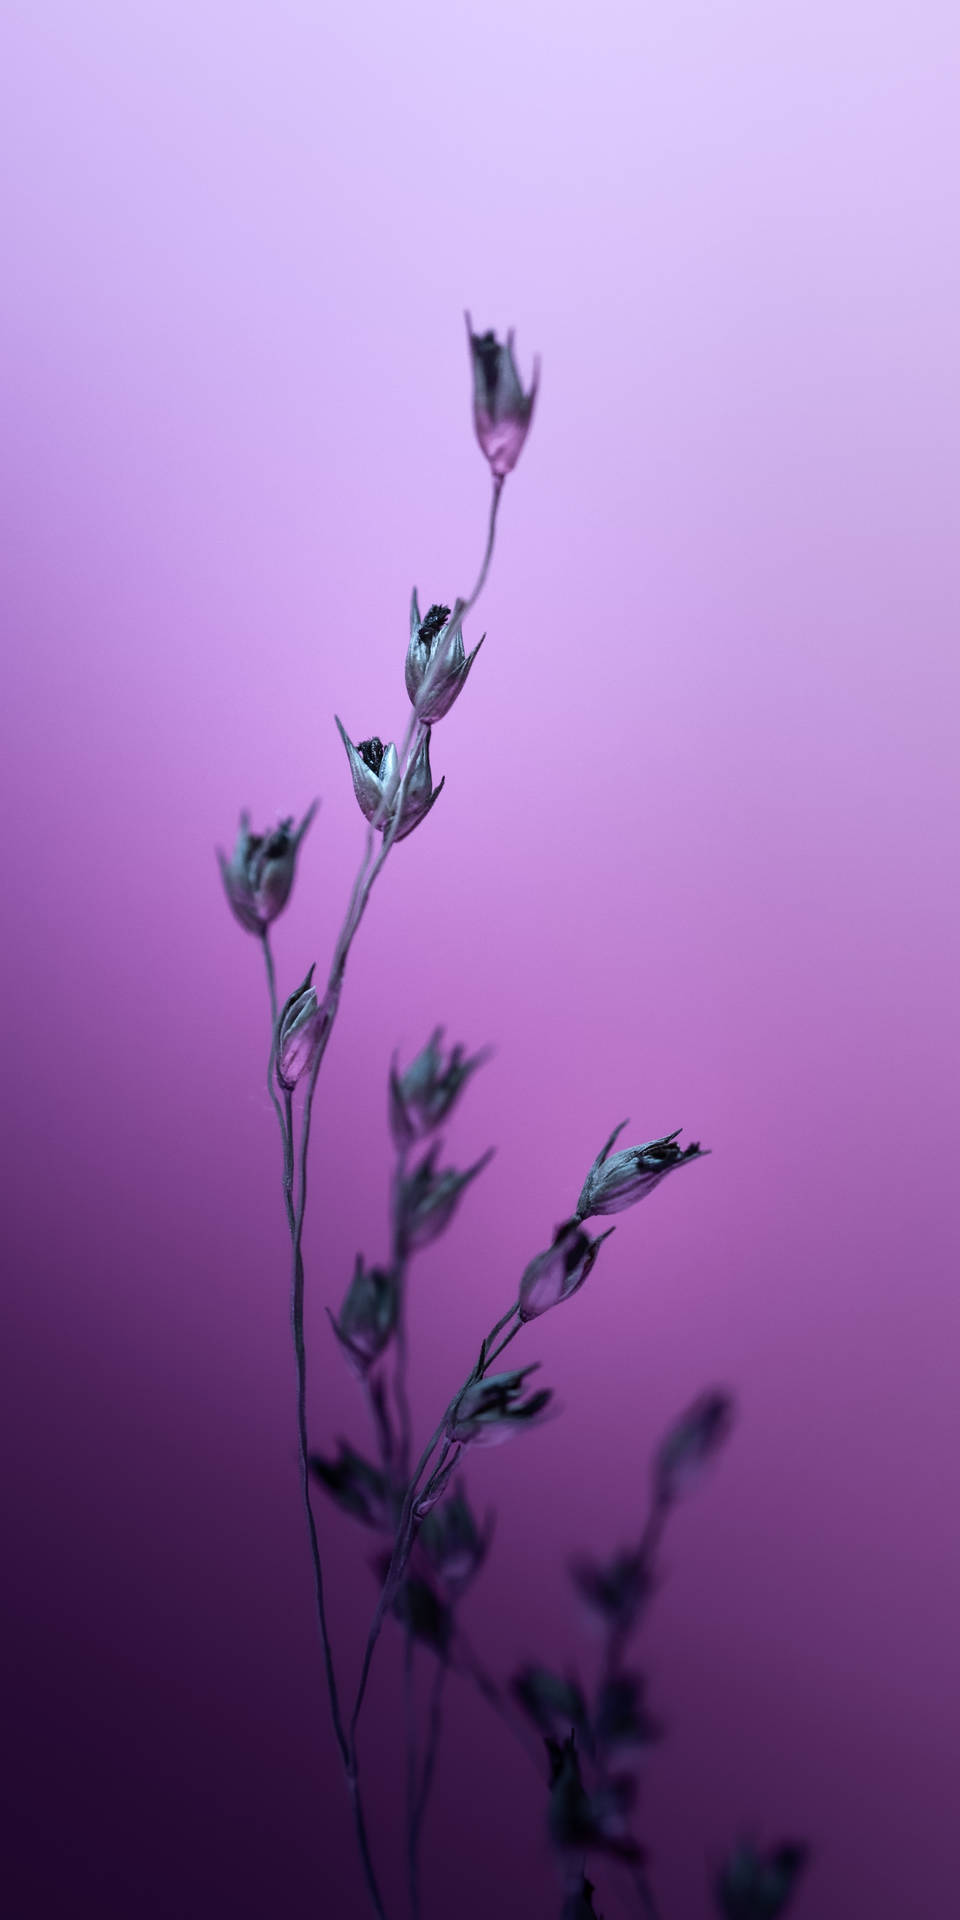 Silverhairgrass-växter Blommar Knoppar På Dator- Eller Mobilbakgrundsbilden. Wallpaper